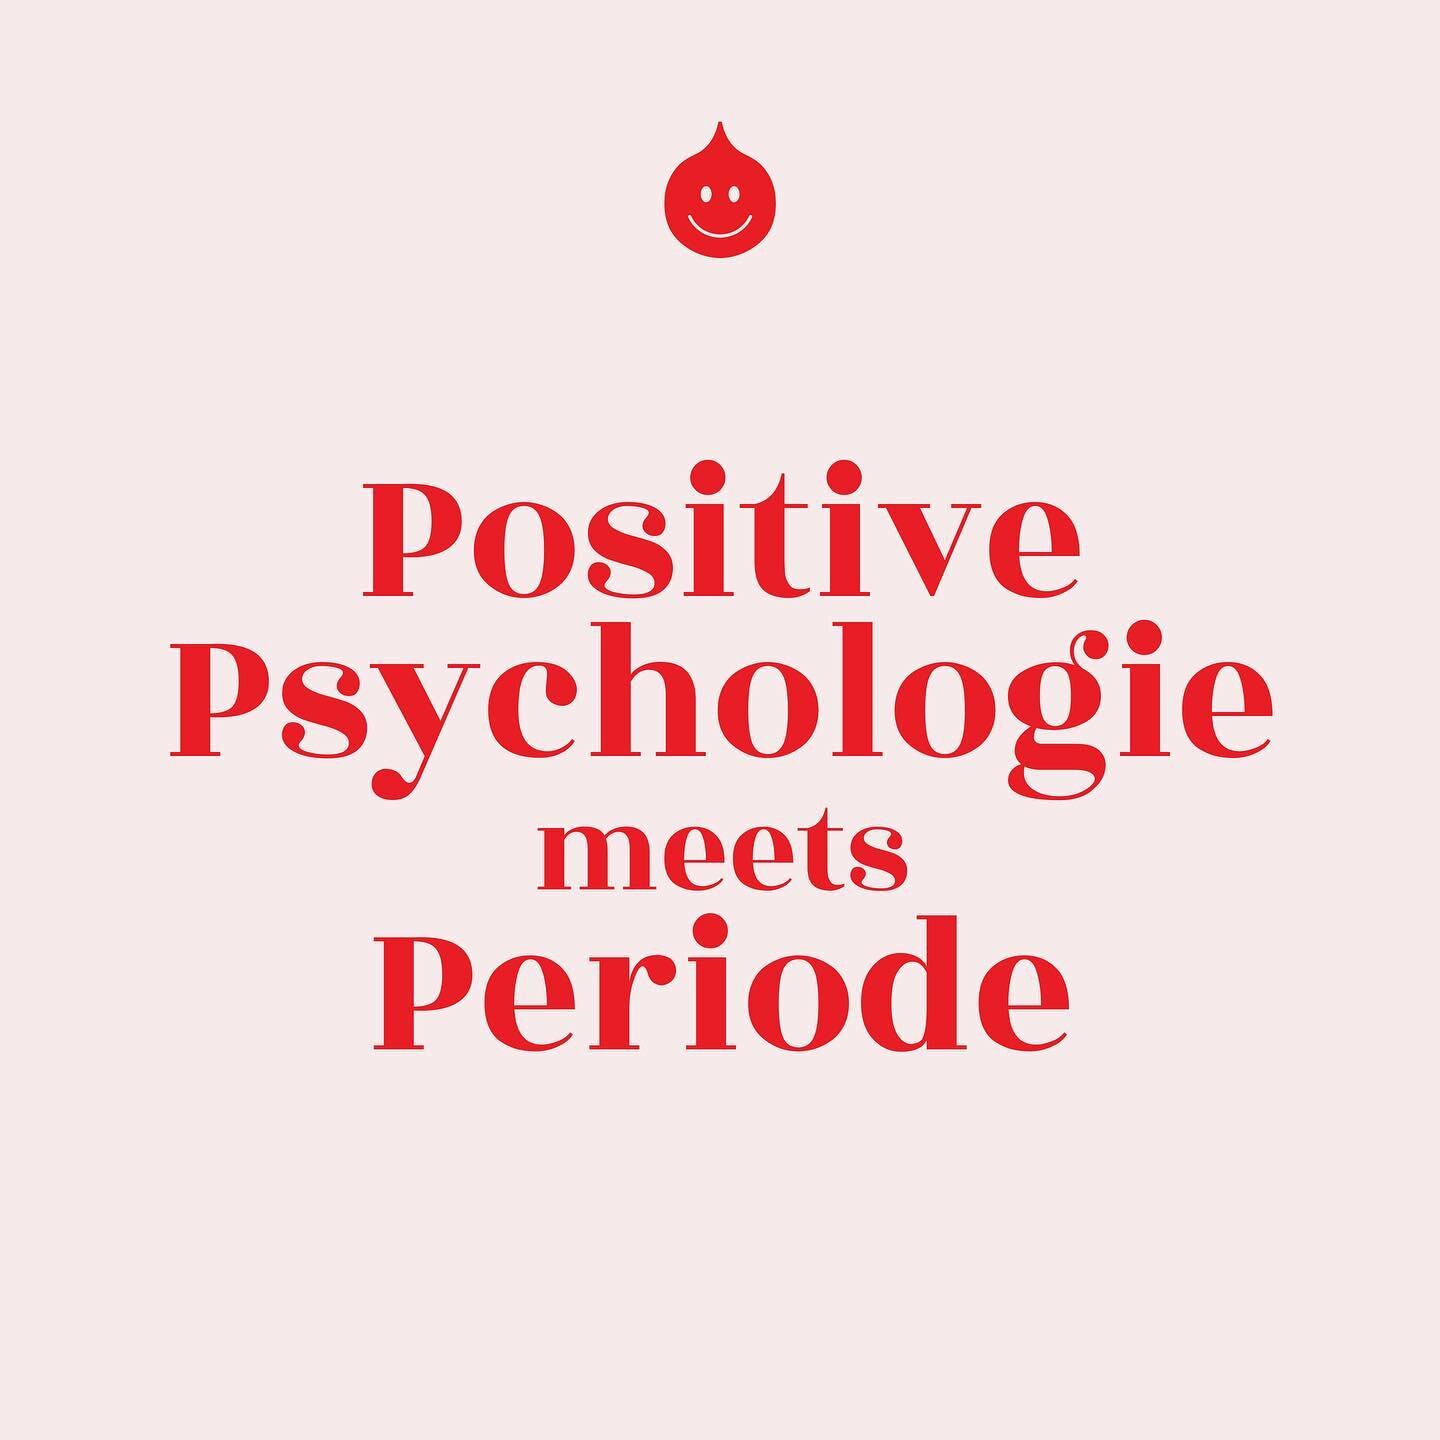 Die Positive Psychologie befasst sich (ganz ganz oberfl&auml;chig gesprochen) mit den positiven Aspekten im Leben. Und sollte nicht die Periode ein ganz ganz positiver Aspekt in jedem Leben eines Menschen mit Geb&auml;rmutter sein? ❤️ 

In der Studie